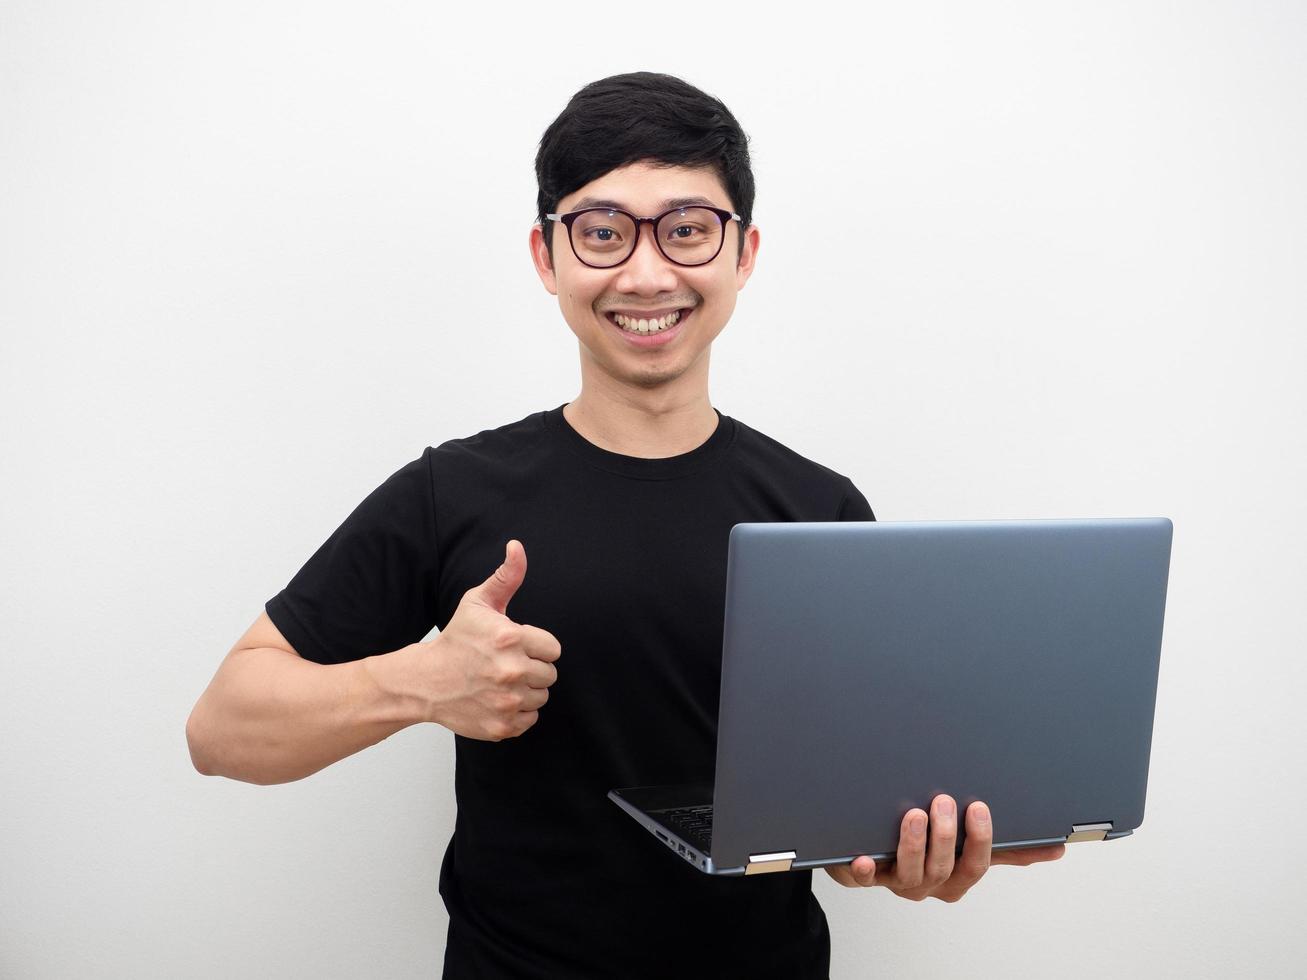 Aziatisch Mens met bril Holding laptop duim omhoog en gelukkig glimlach gezicht Aan wit achtergrond foto